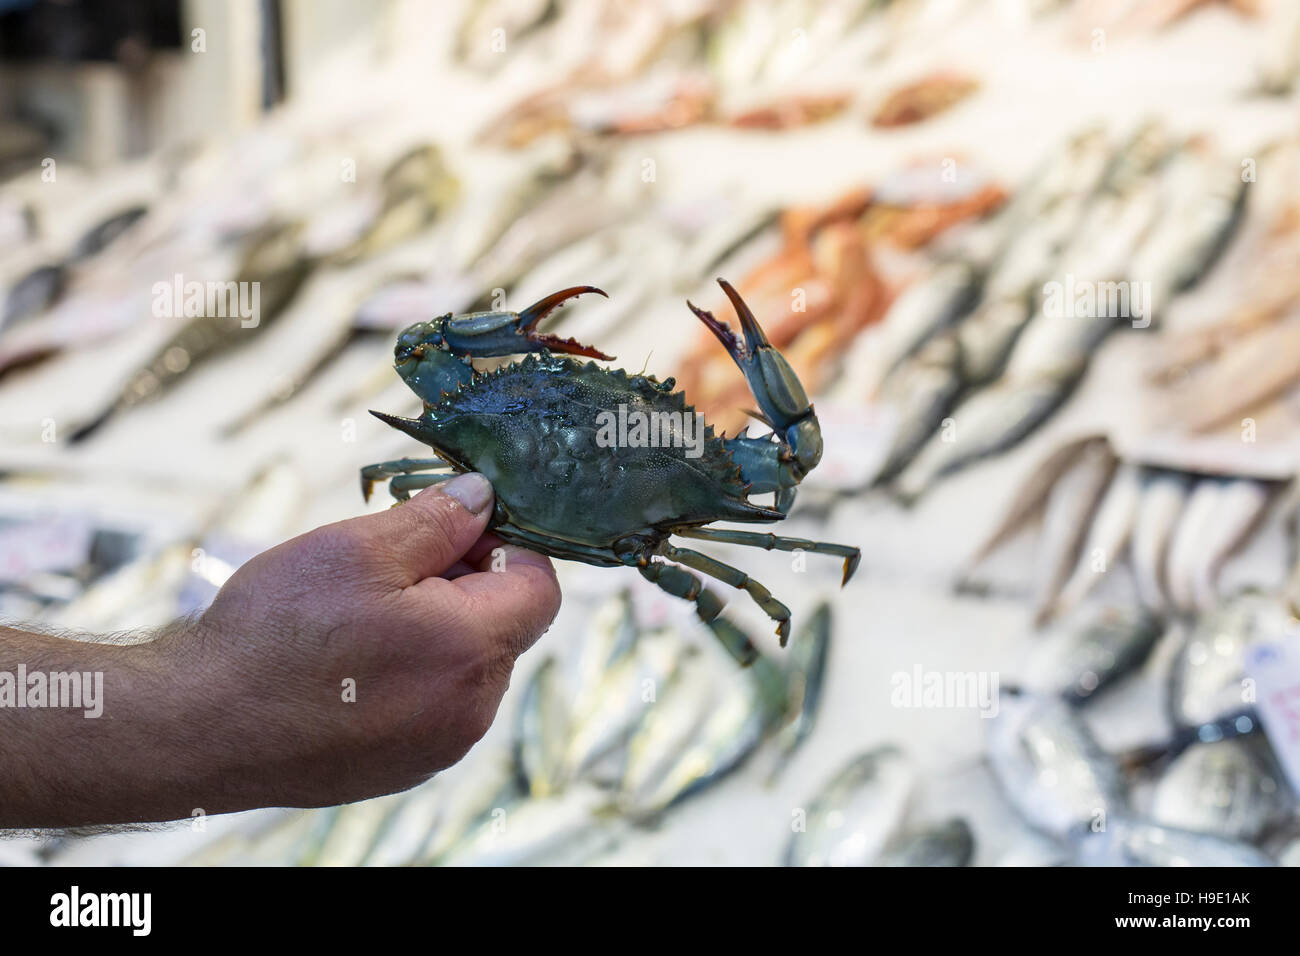 Auswahl an Fisch und Meeresfrüchten auf Griechenland Regionalmarkt. Stockfoto